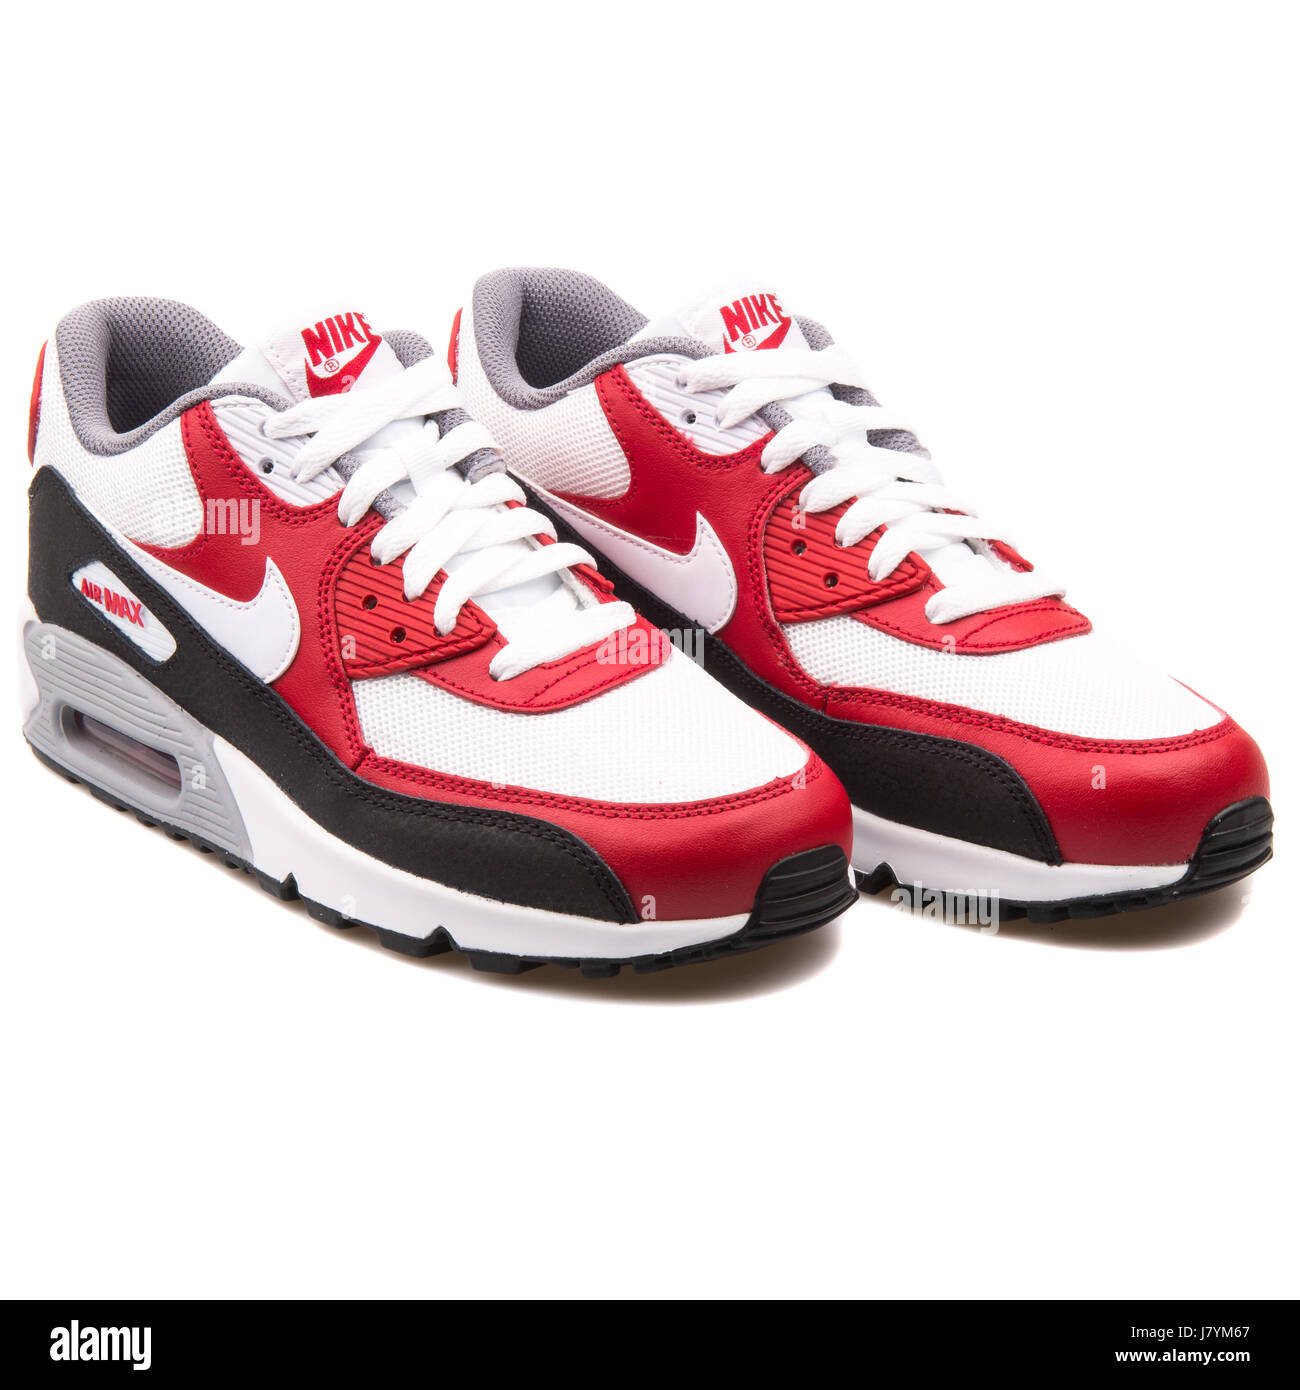 Nike Air Max 90 GS (Mesh) Rouge Blanc et Noir Chaussures de sport jeunesse  - 724824-102 Photo Stock - Alamy